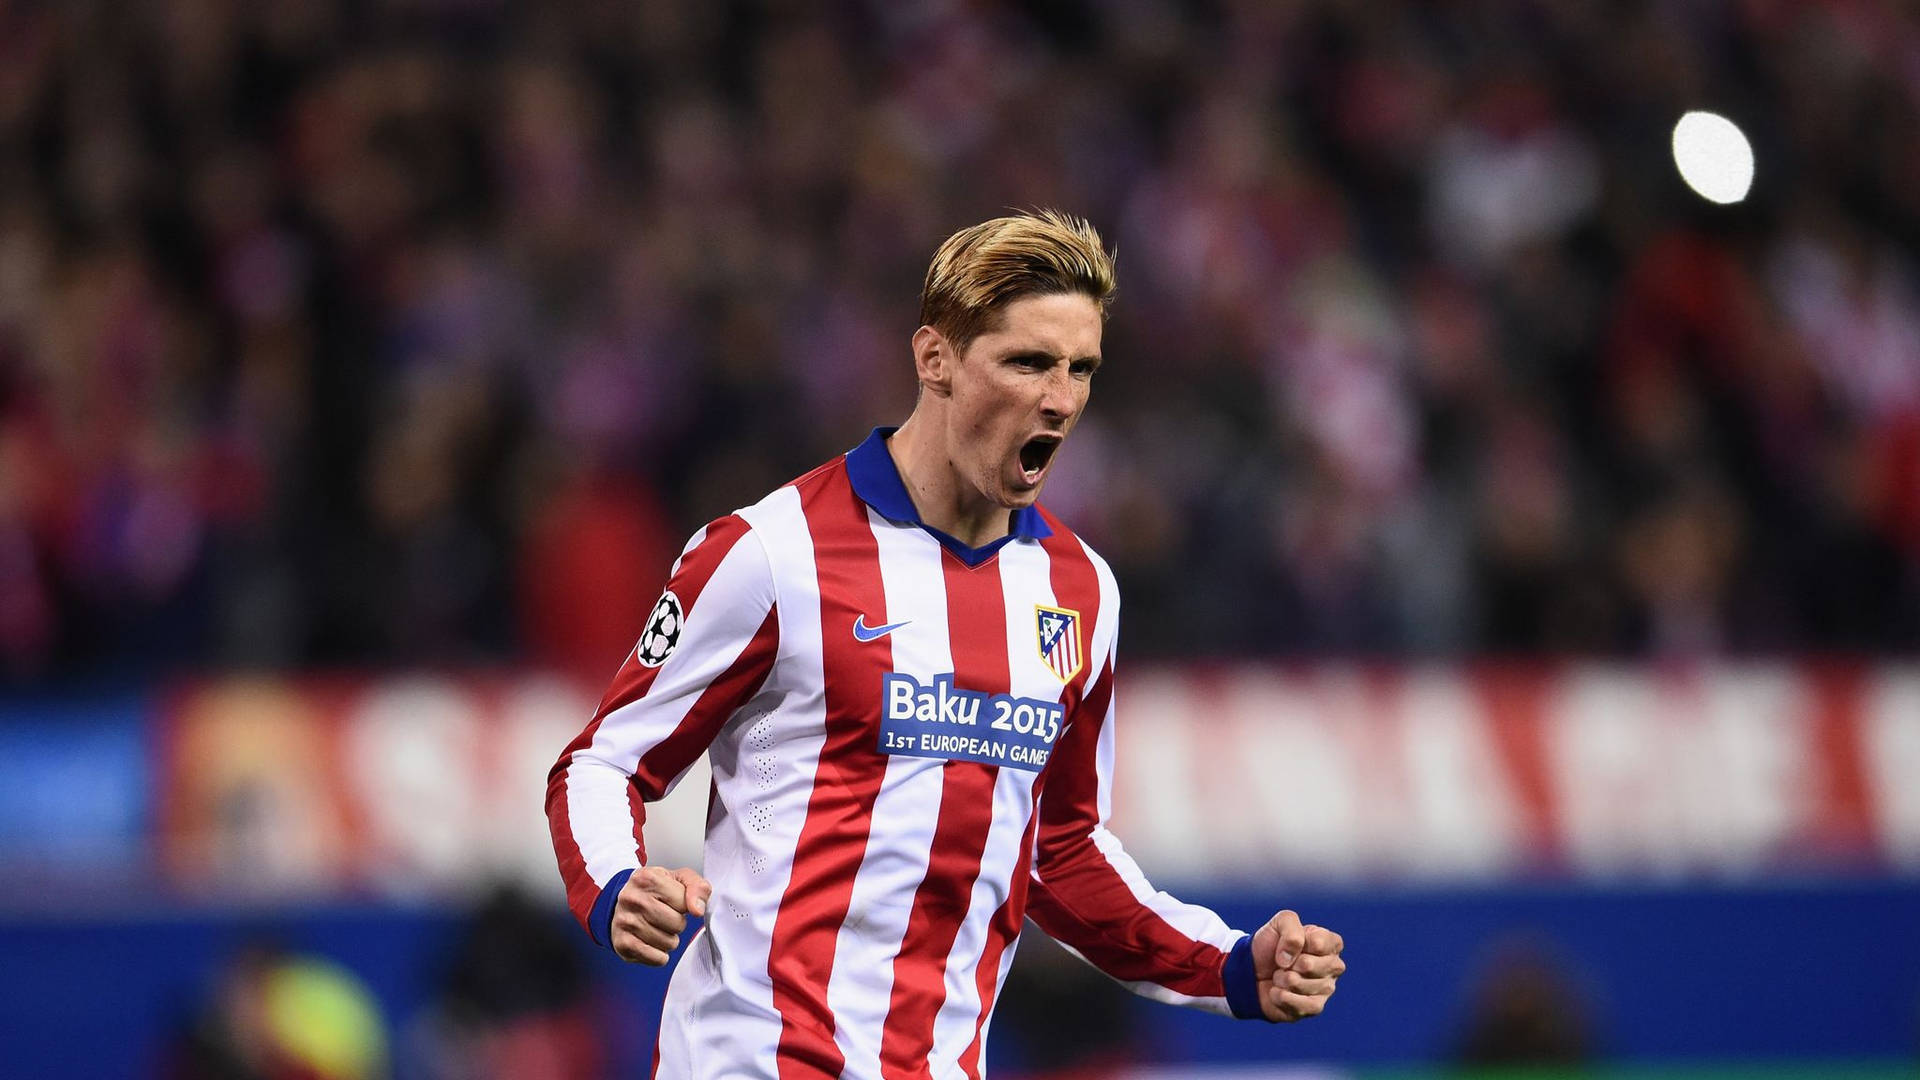 Fernando Torres In Baku 2015 Game Background